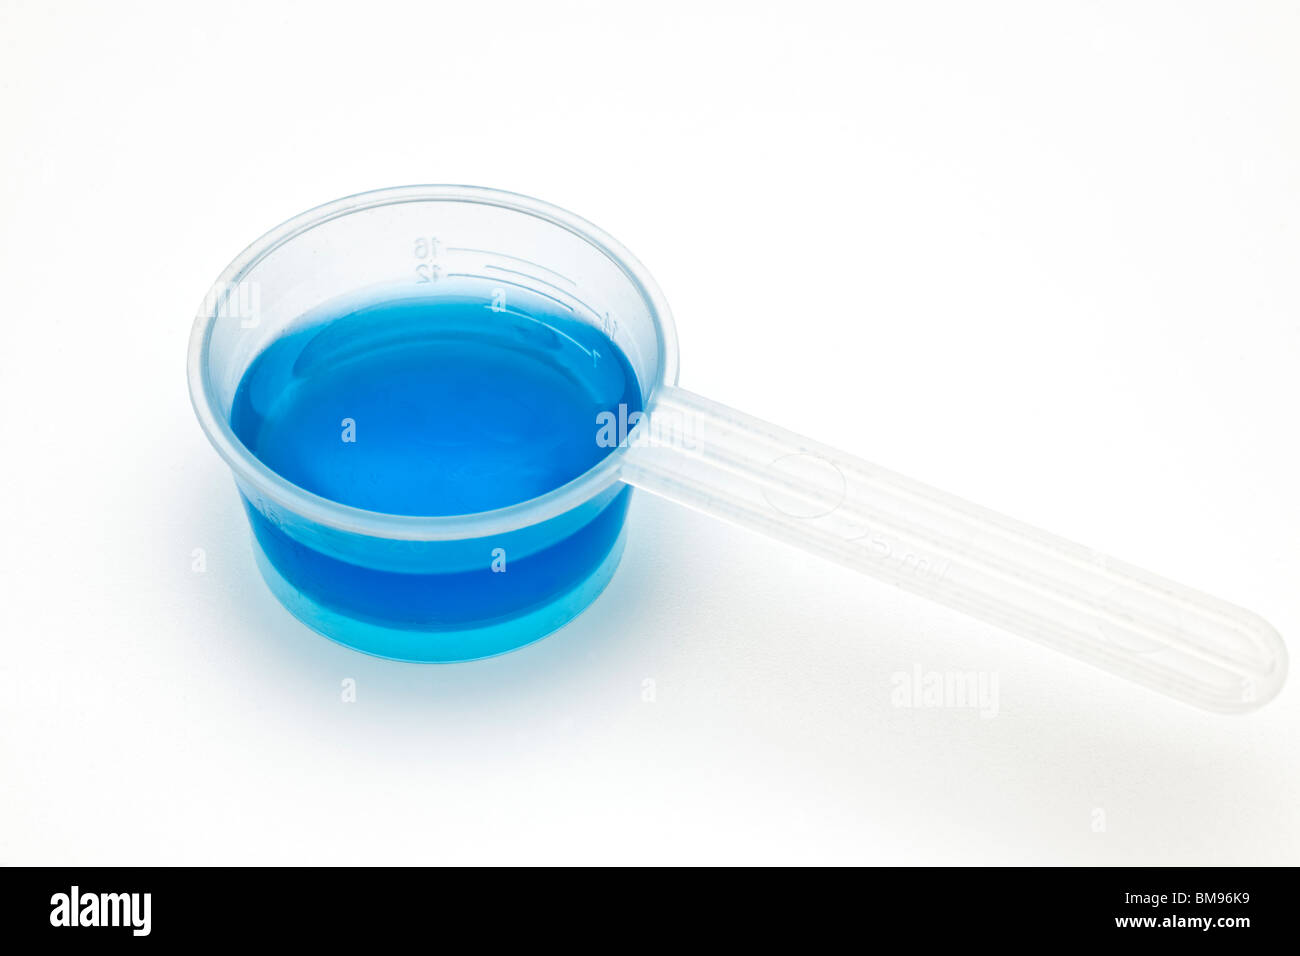 10 ml de líquido azul en un cacito dosificador de plástico Foto de stock